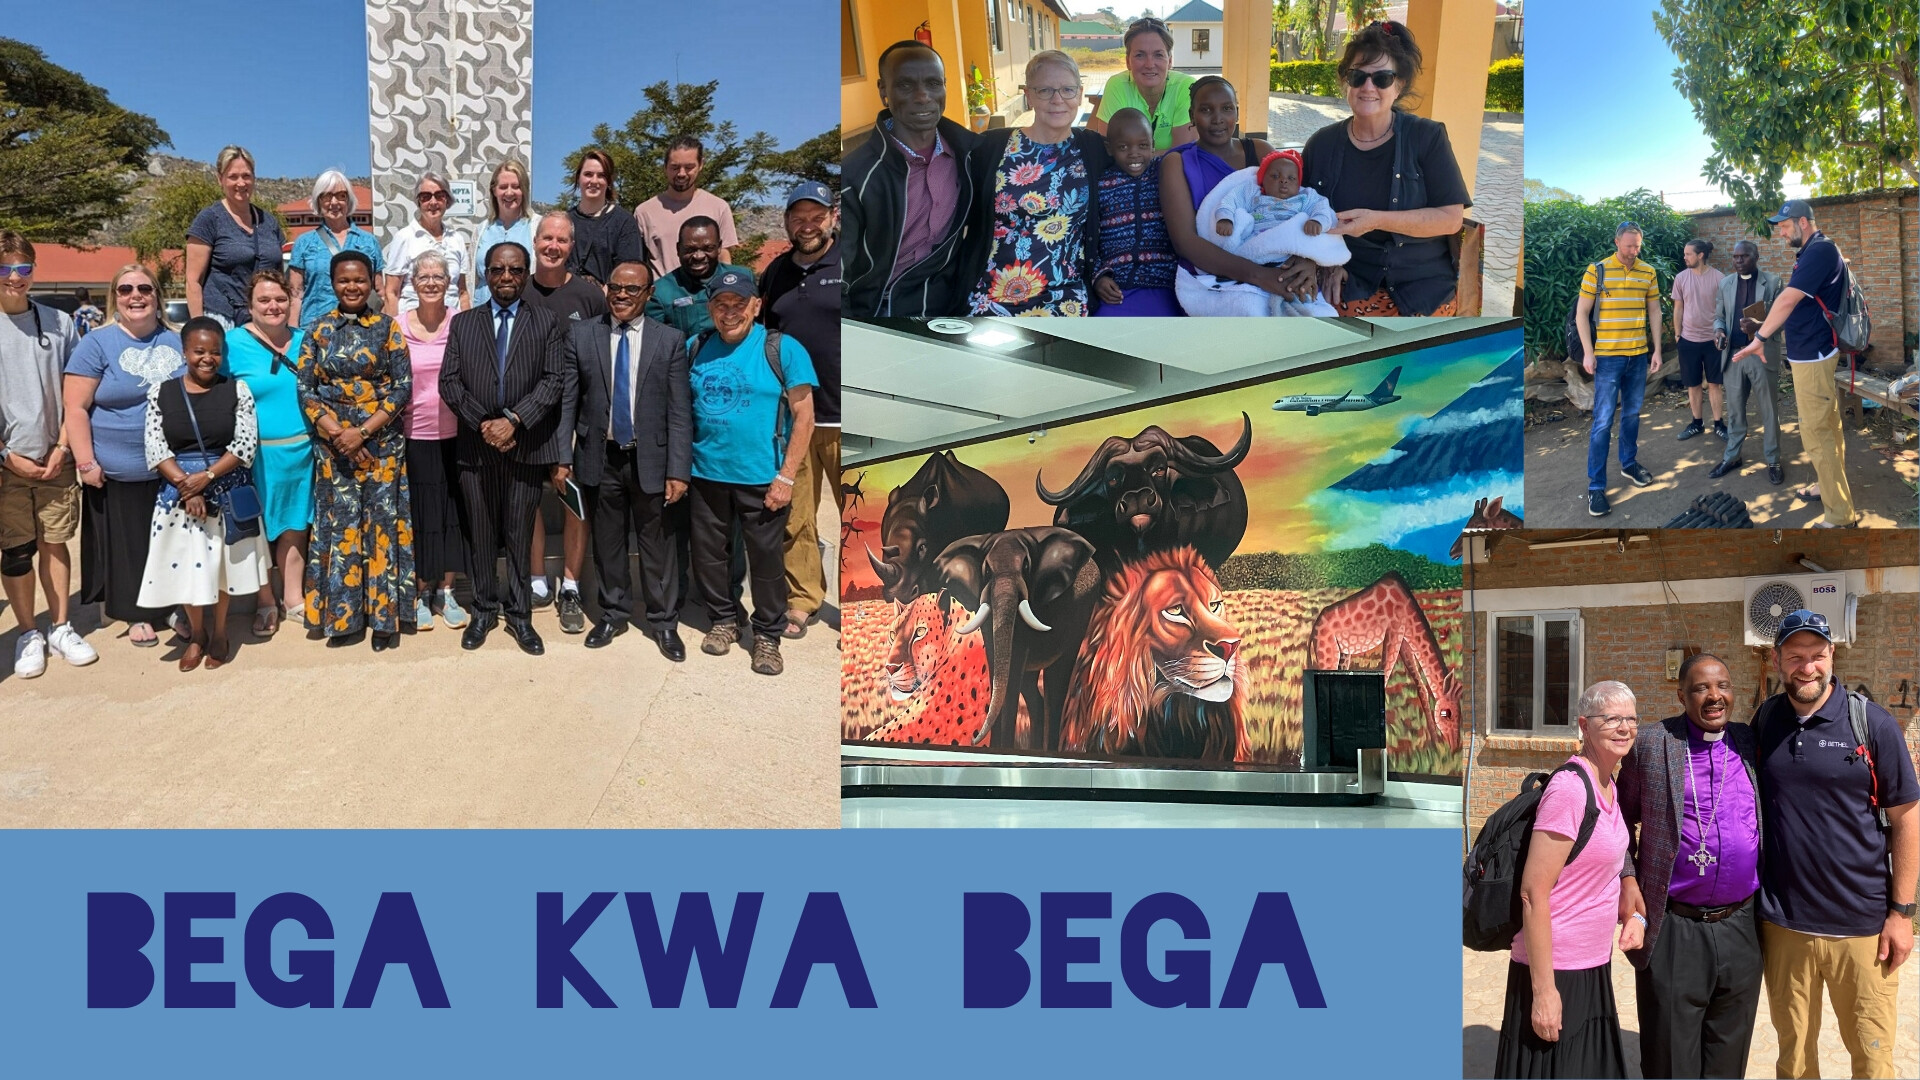 Bega Kwa Bega, Children's Message